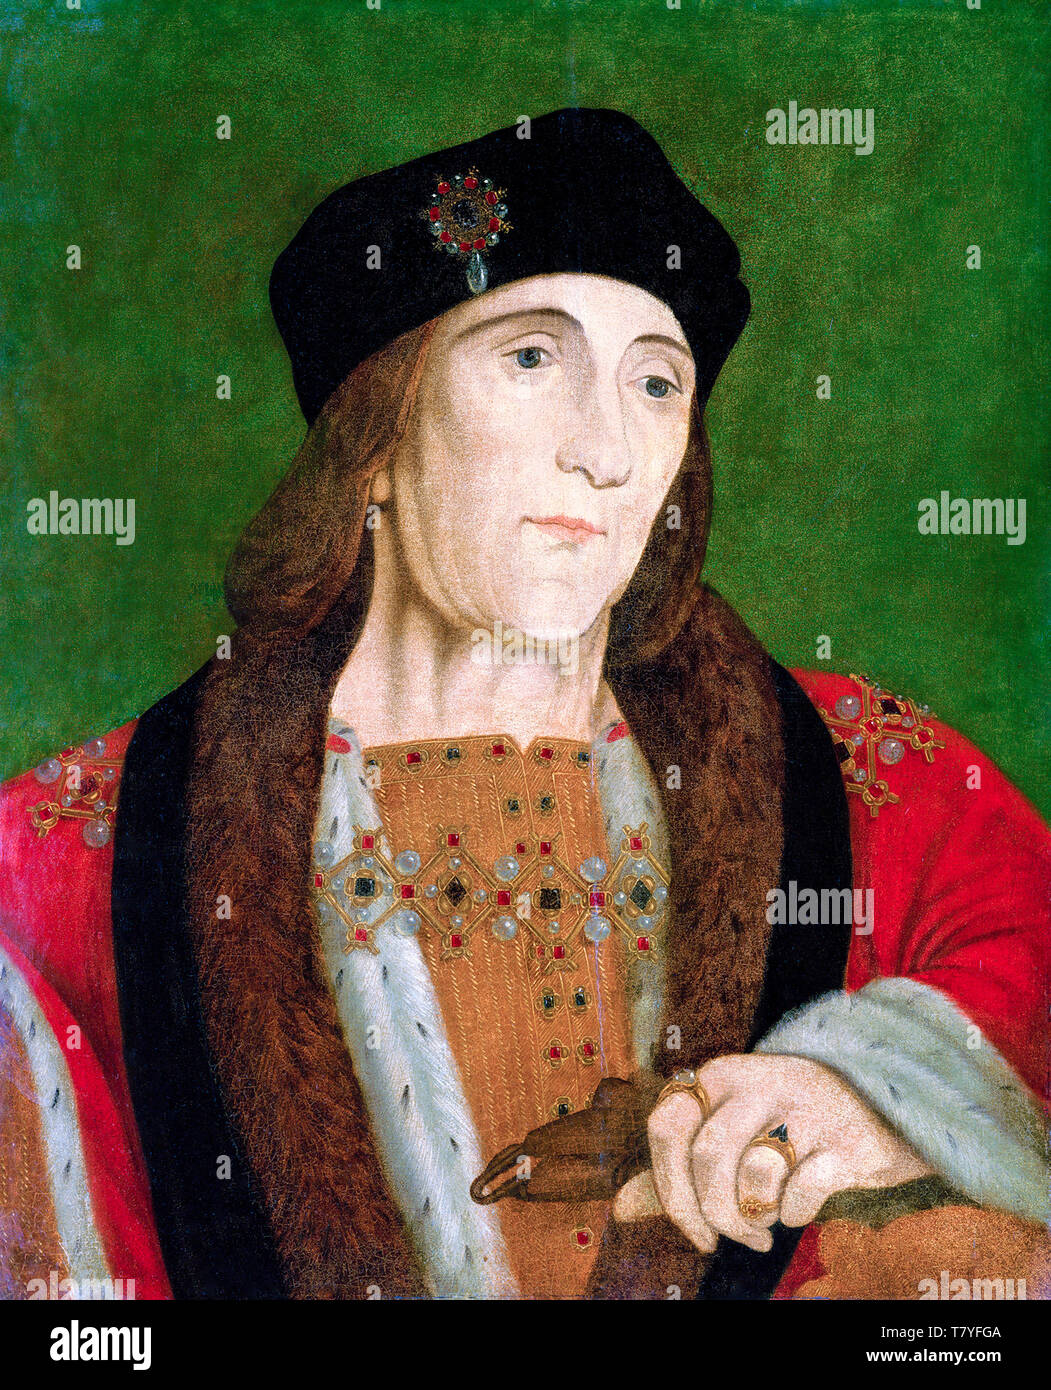 Portrait von Henry VII (1457-1509), König von England, Malerei, 16. Jahrhundert Stockfoto